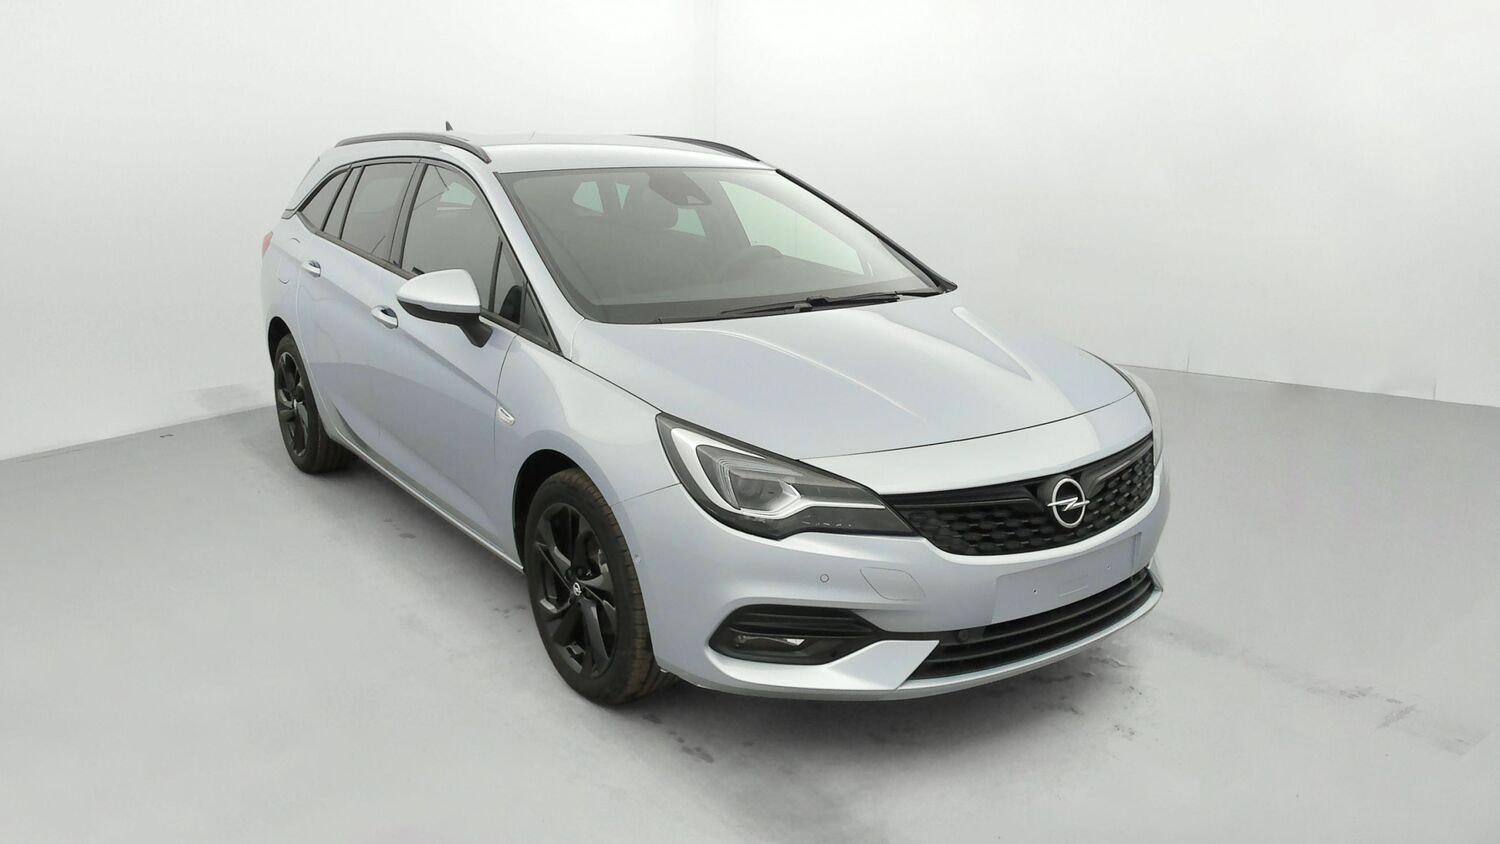 Opel Astra 1.5 CDTi 122 ch Ultimate BVA9 occasion